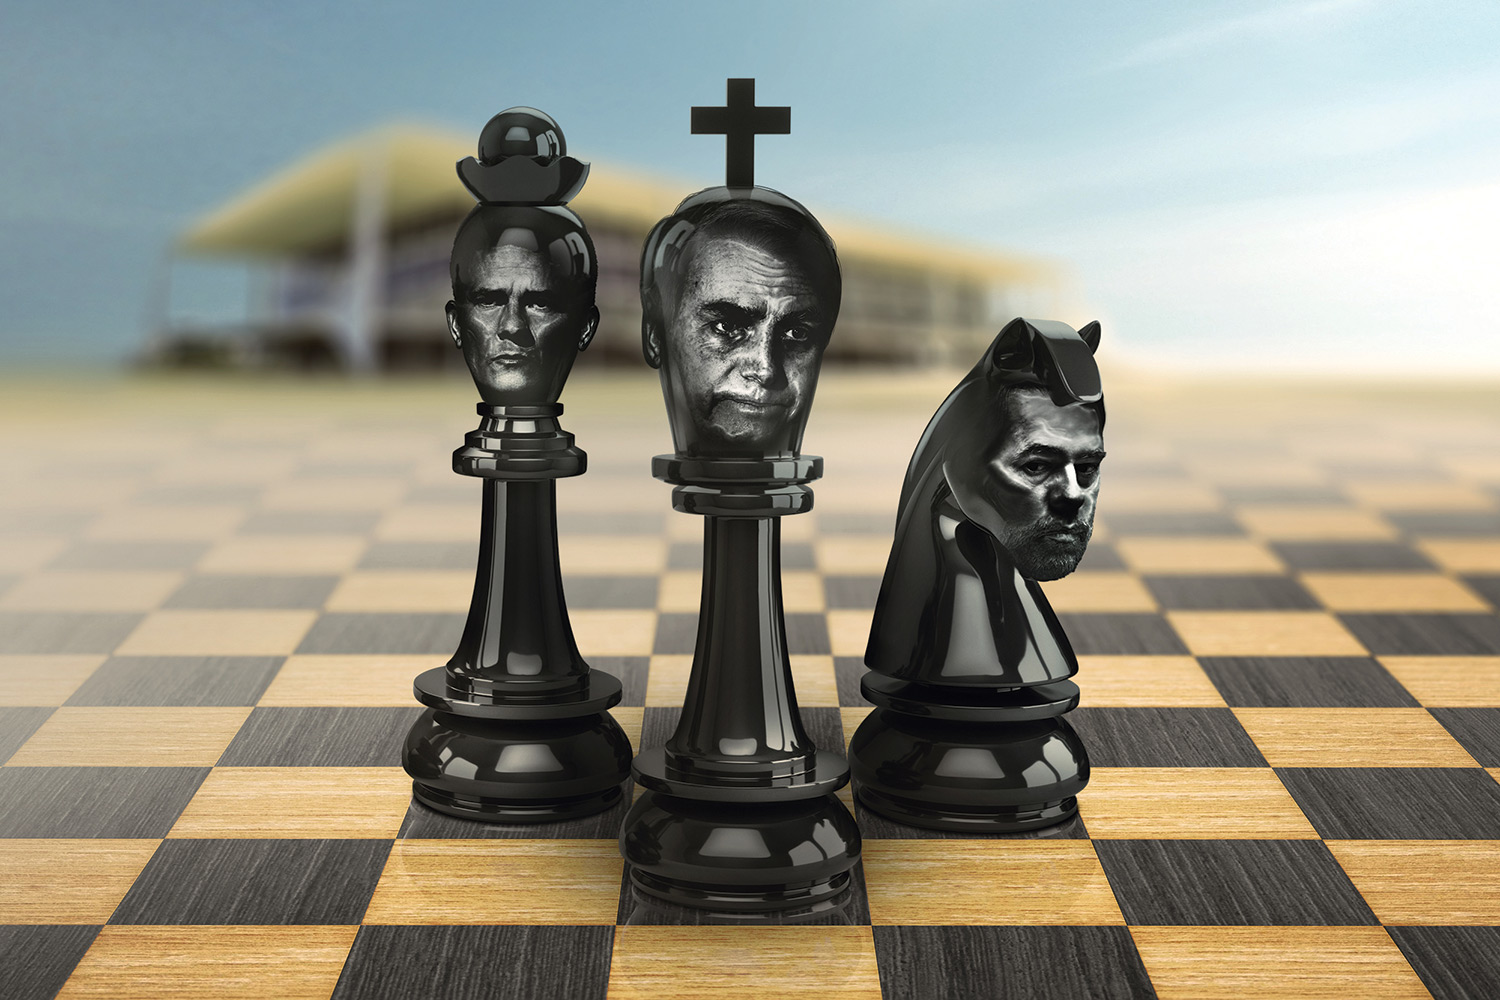 Enquanto os críticos jogam par ou ímpar, Bolsonaro joga xadrez